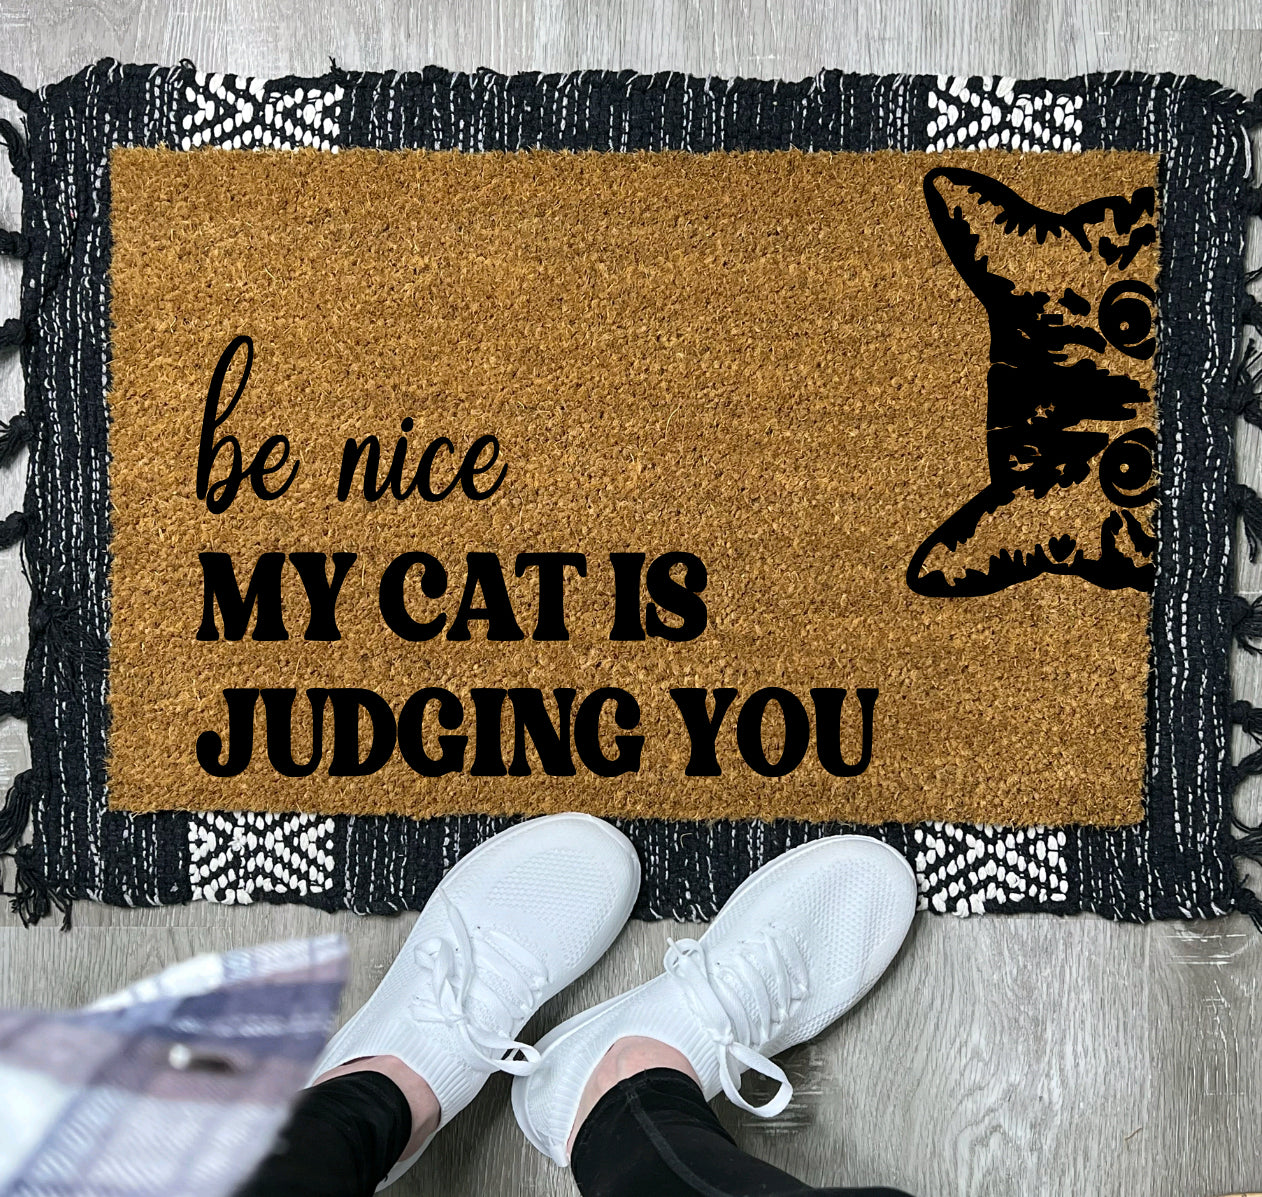 Judging Cat